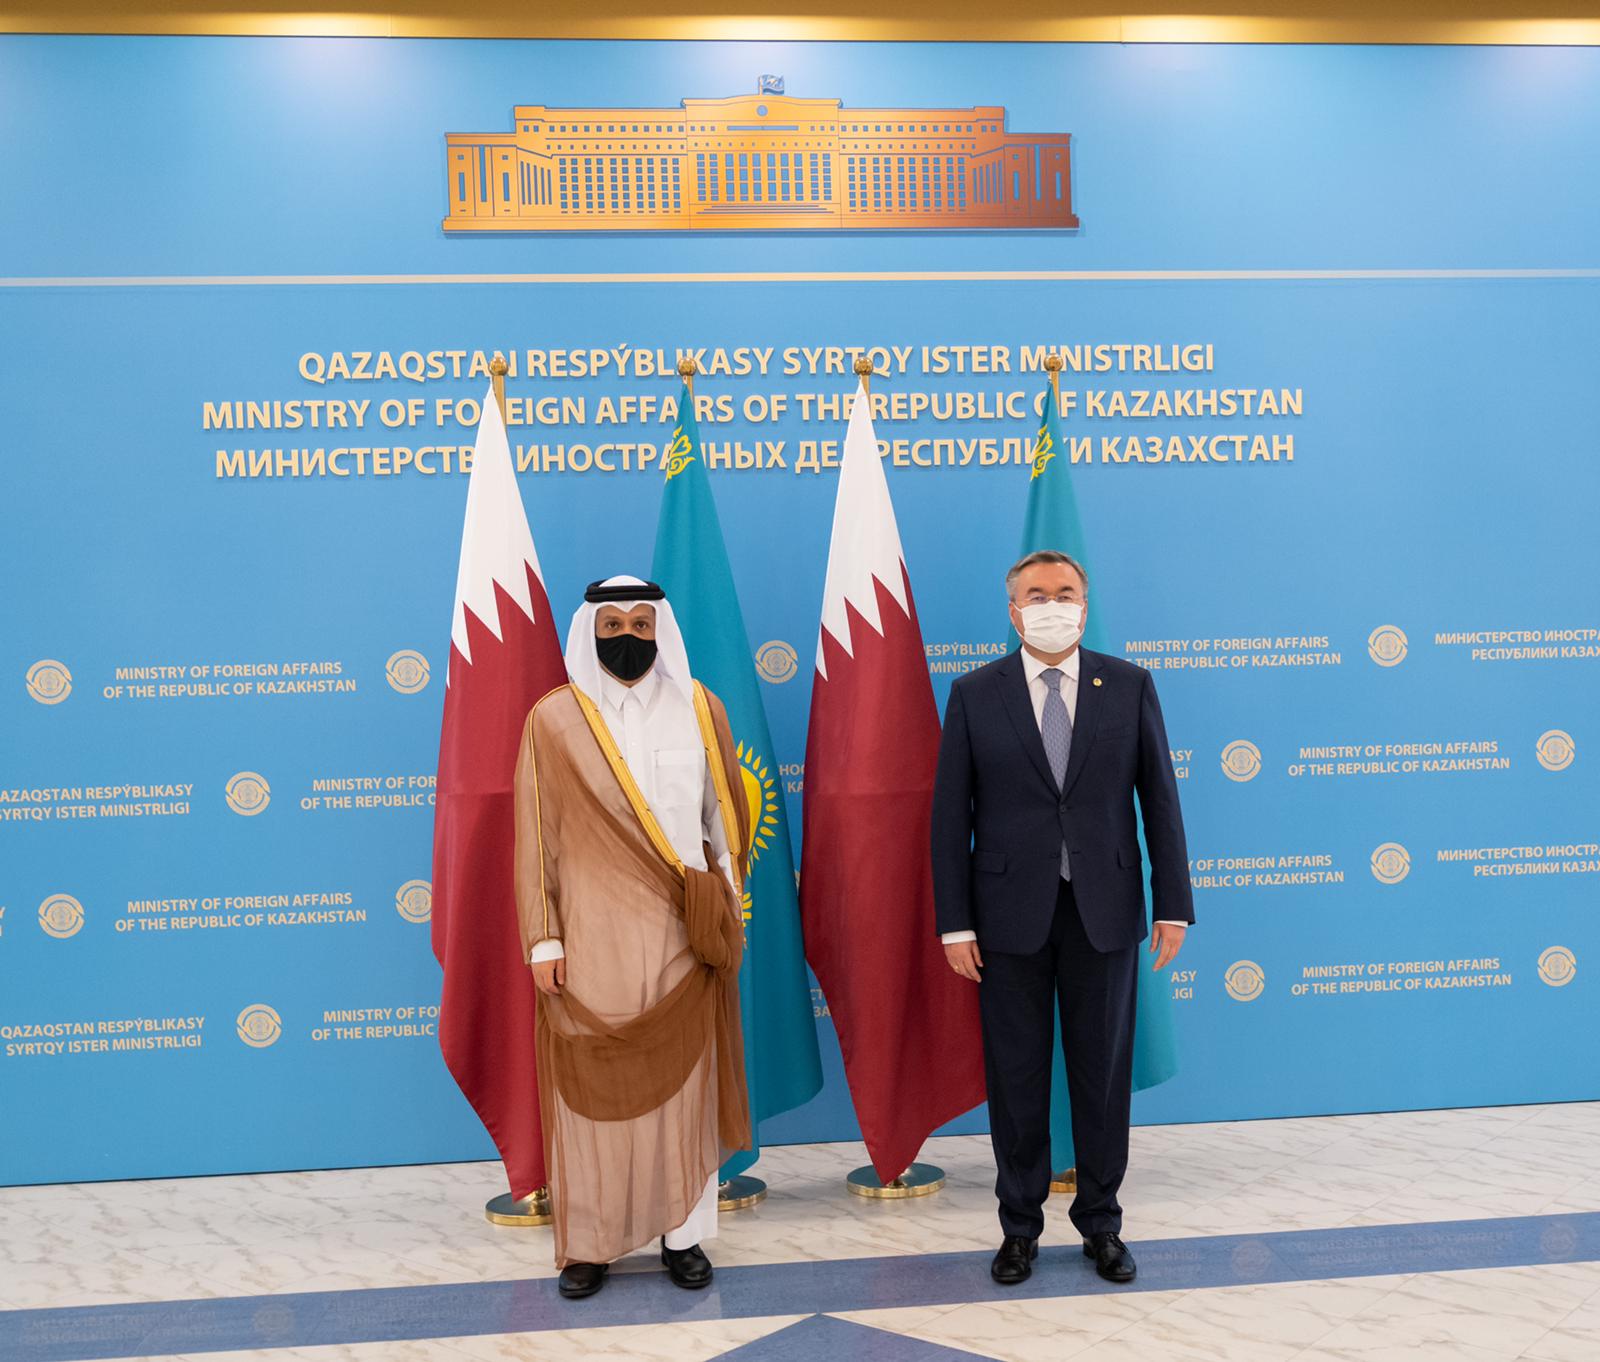 نائب رئيس مجلس الوزراء وزير الخارجية يجتمع مع وزير الخارجية في كازاخستان